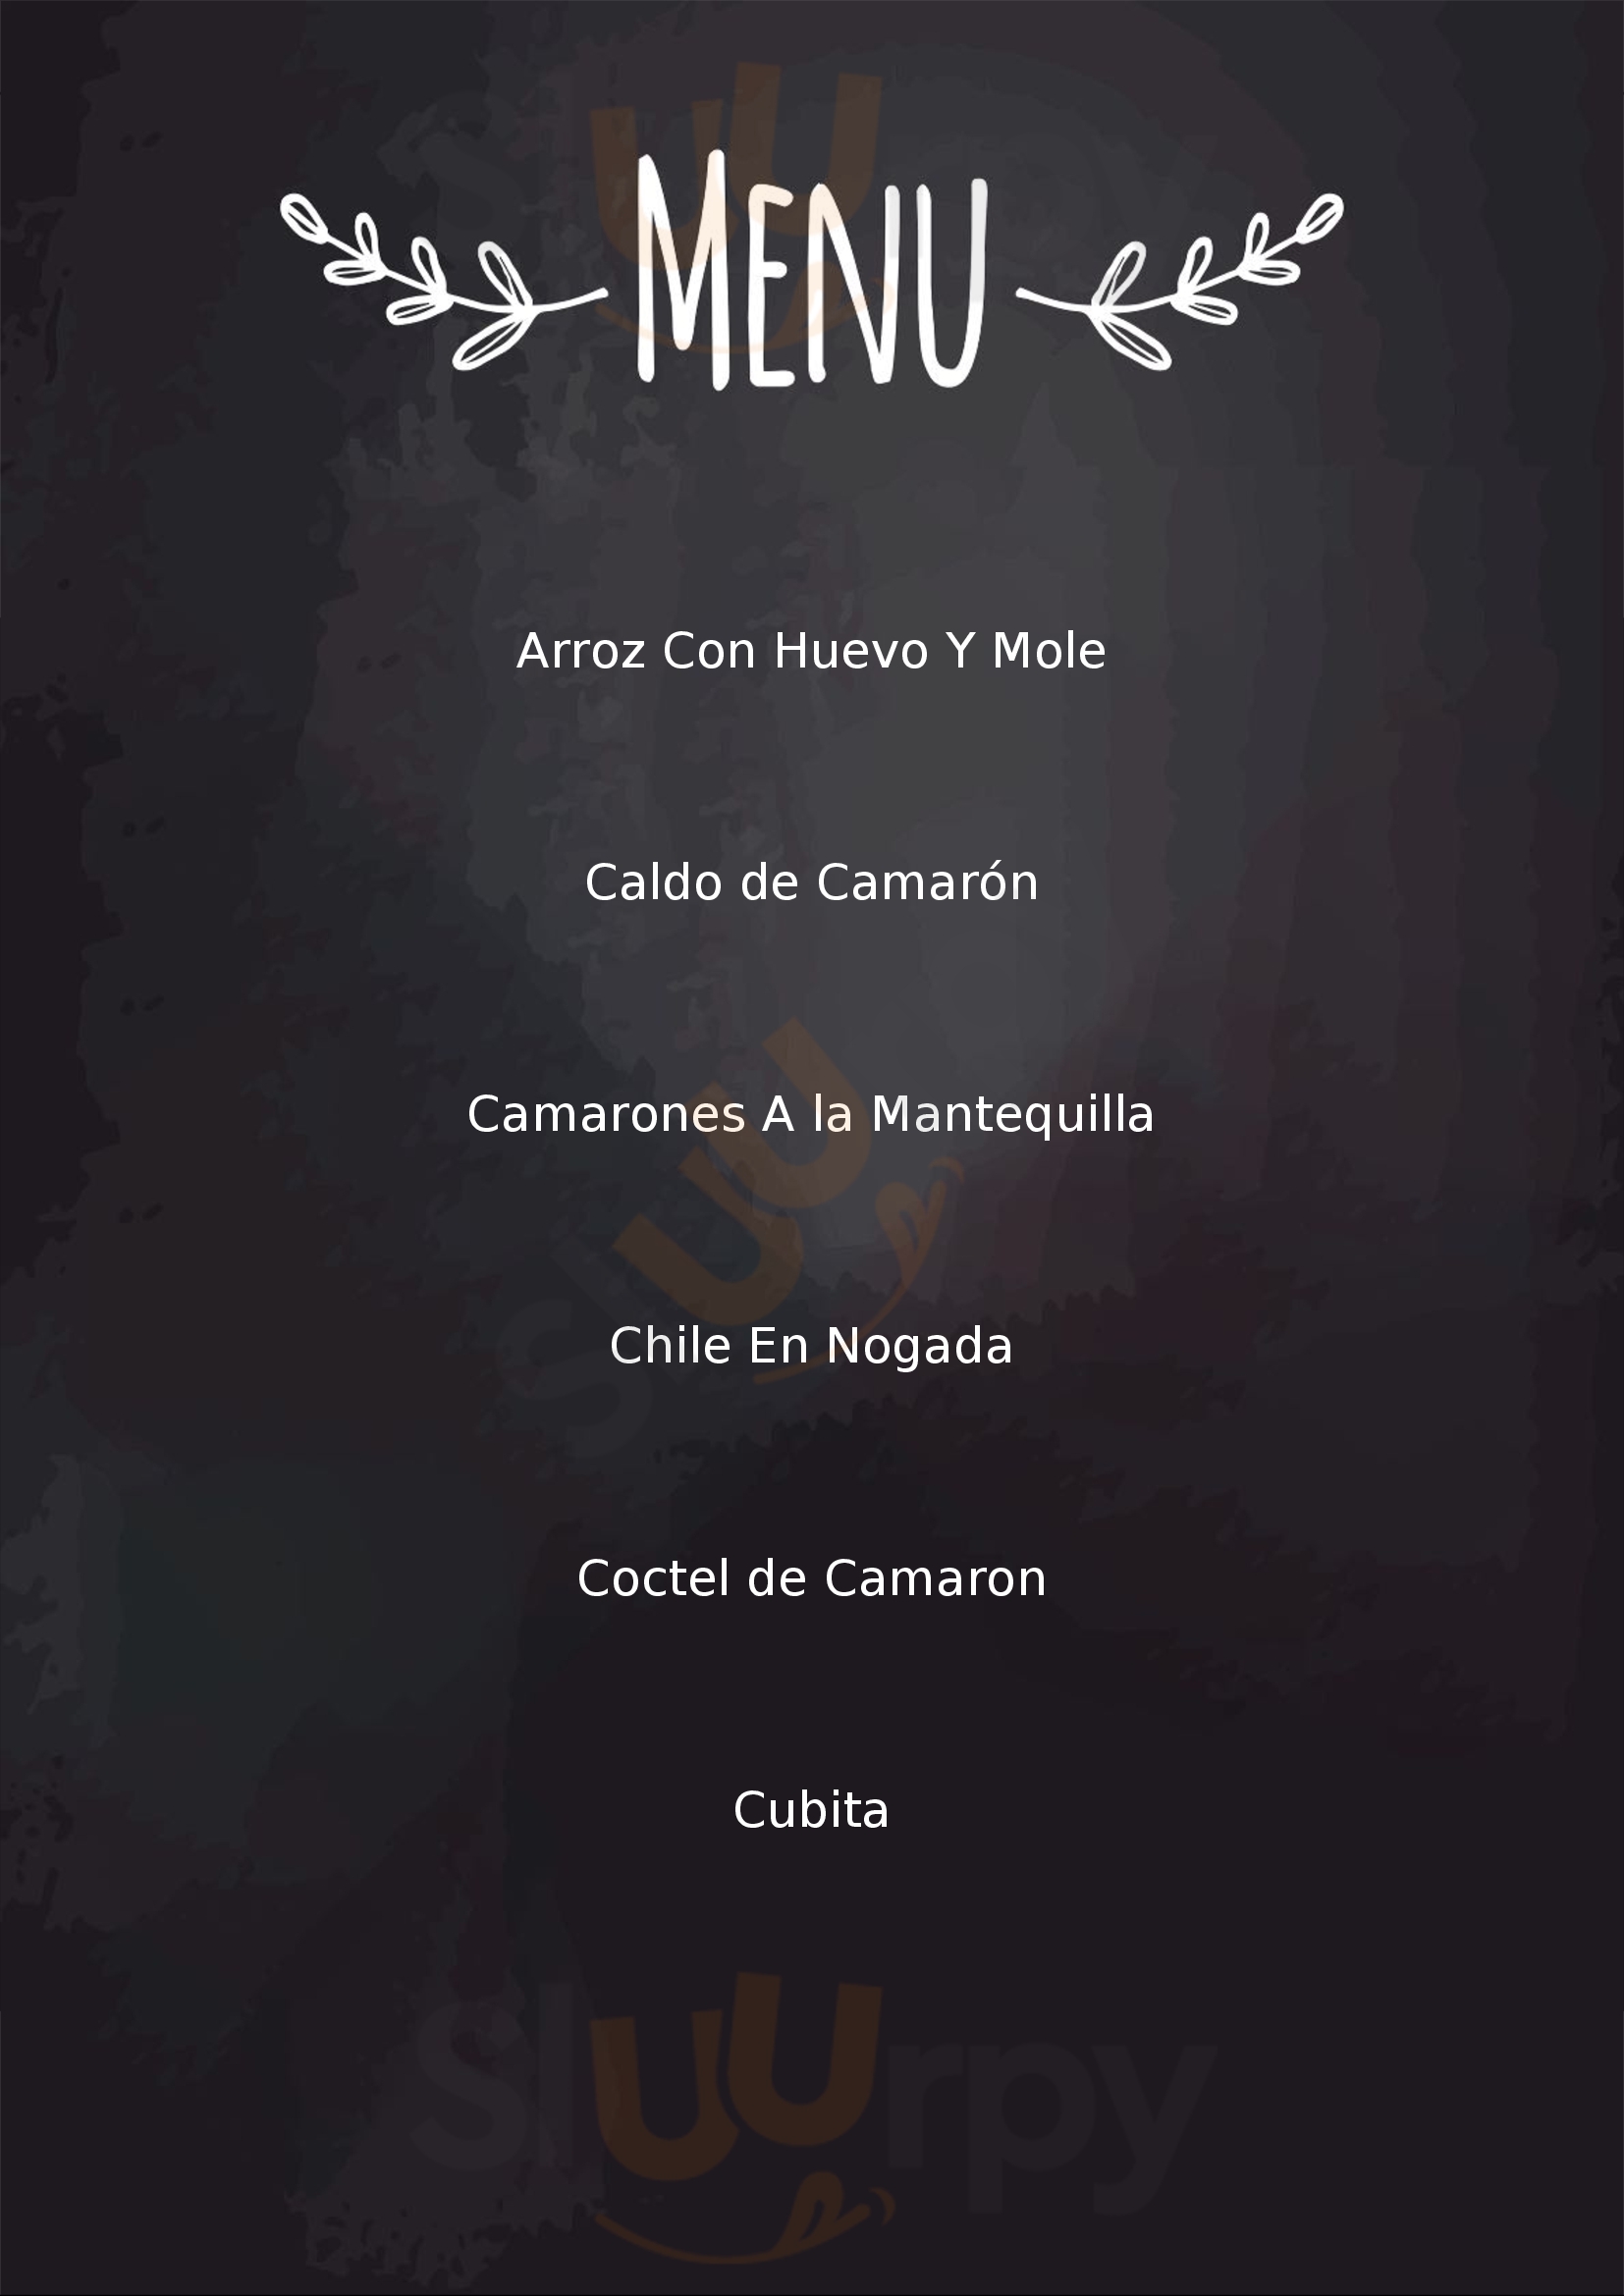 Cantina El Afan - Narvarte Ciudad de México Menu - 1